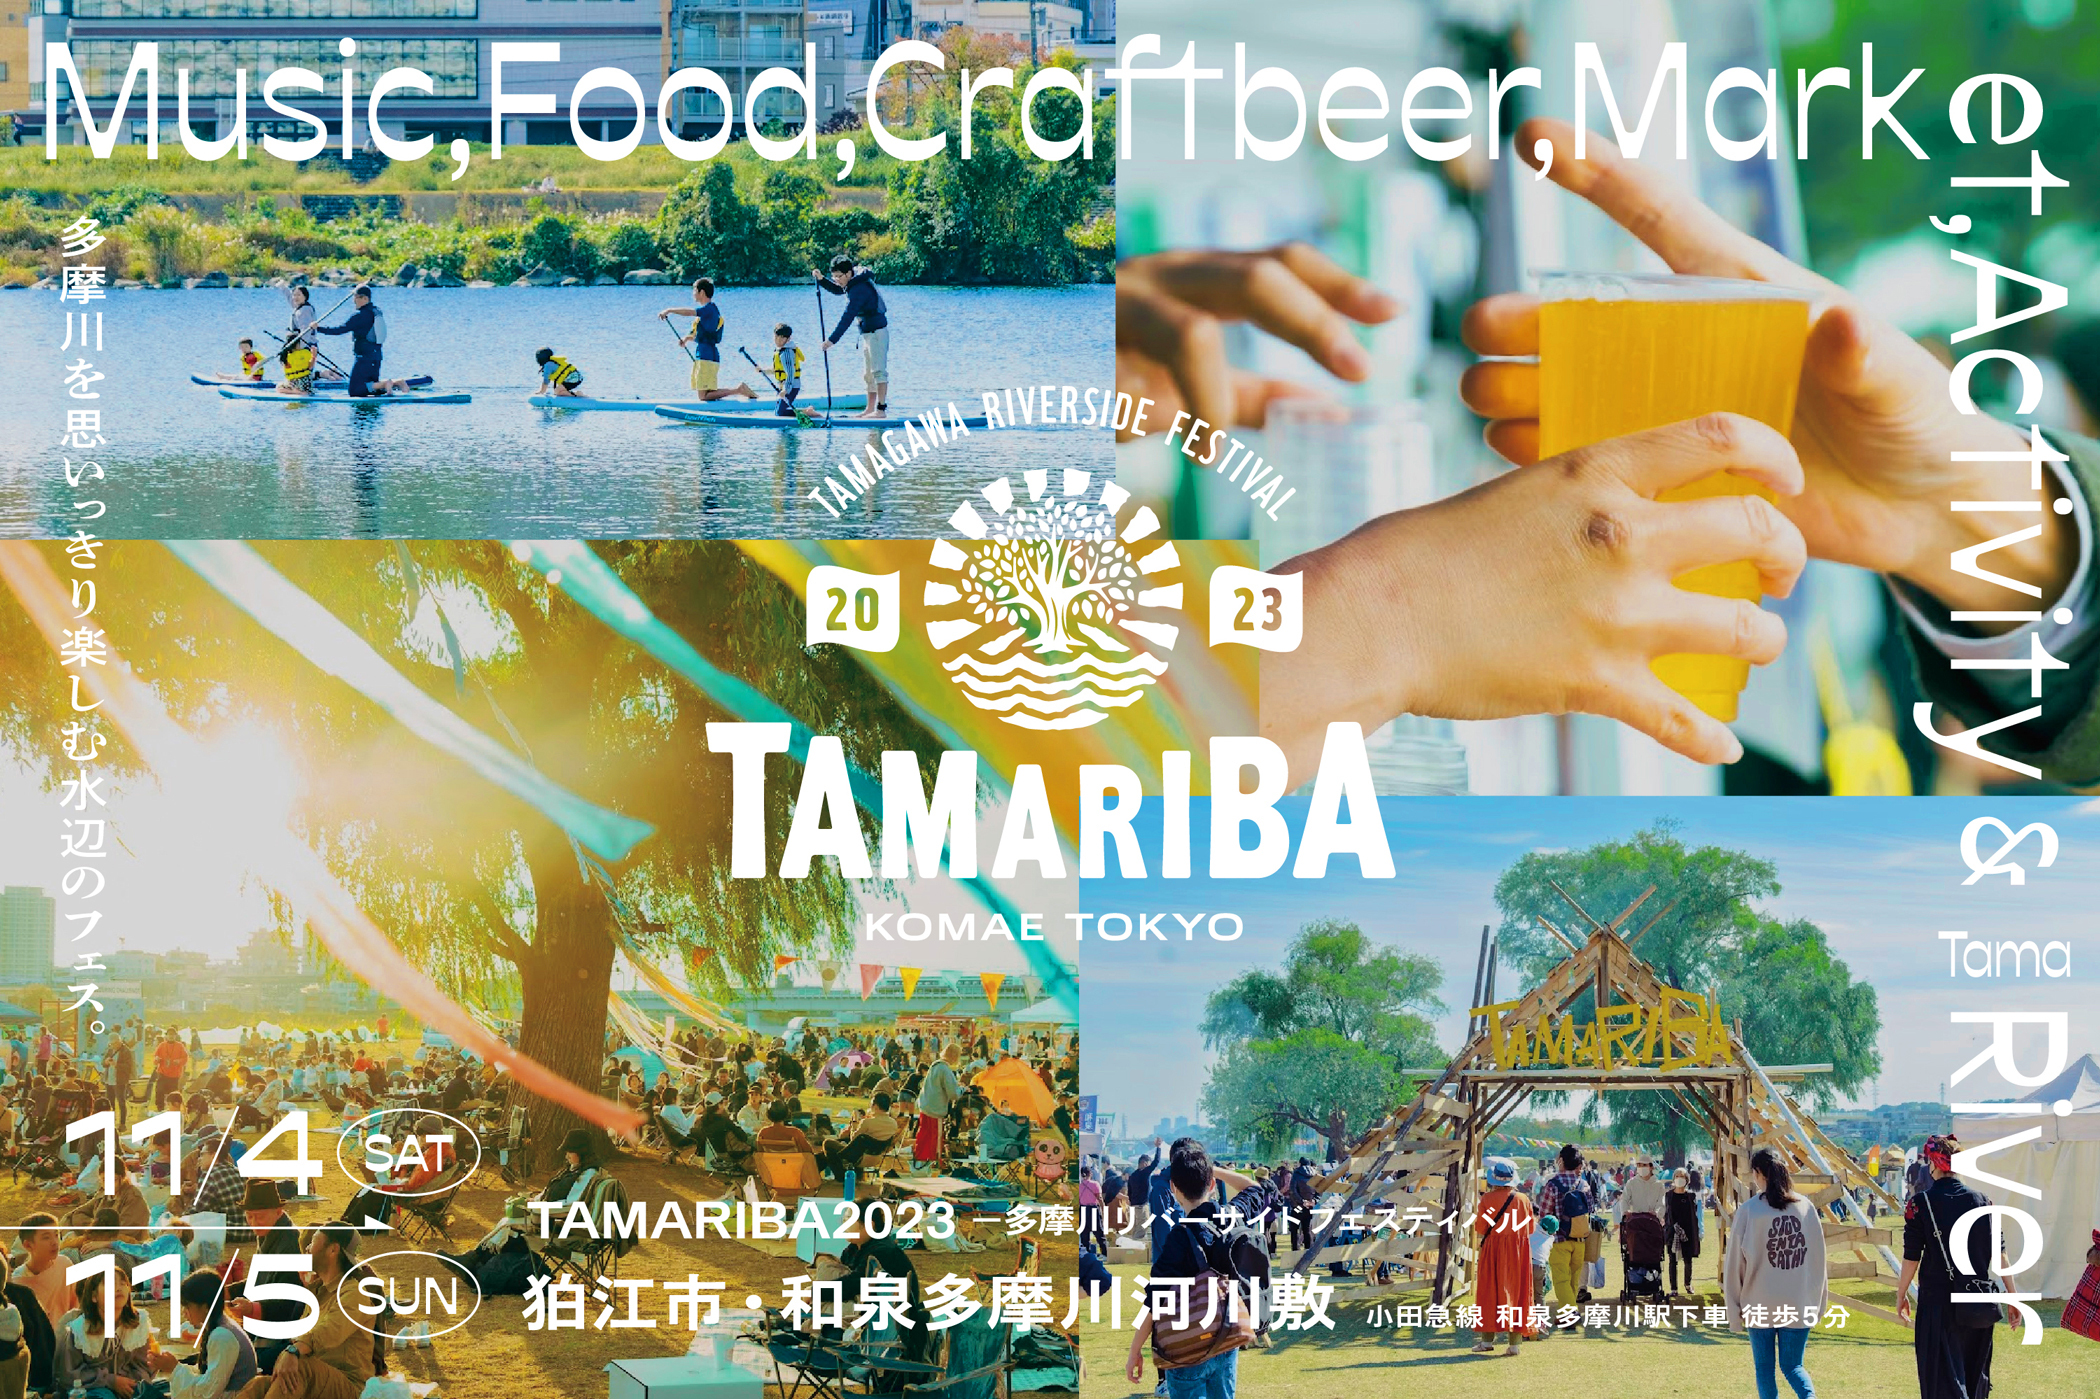 都心から30分の多摩川水辺のフェス「TAMARIBA」
2023年11月4日(土)・5日(日)に開催決定！